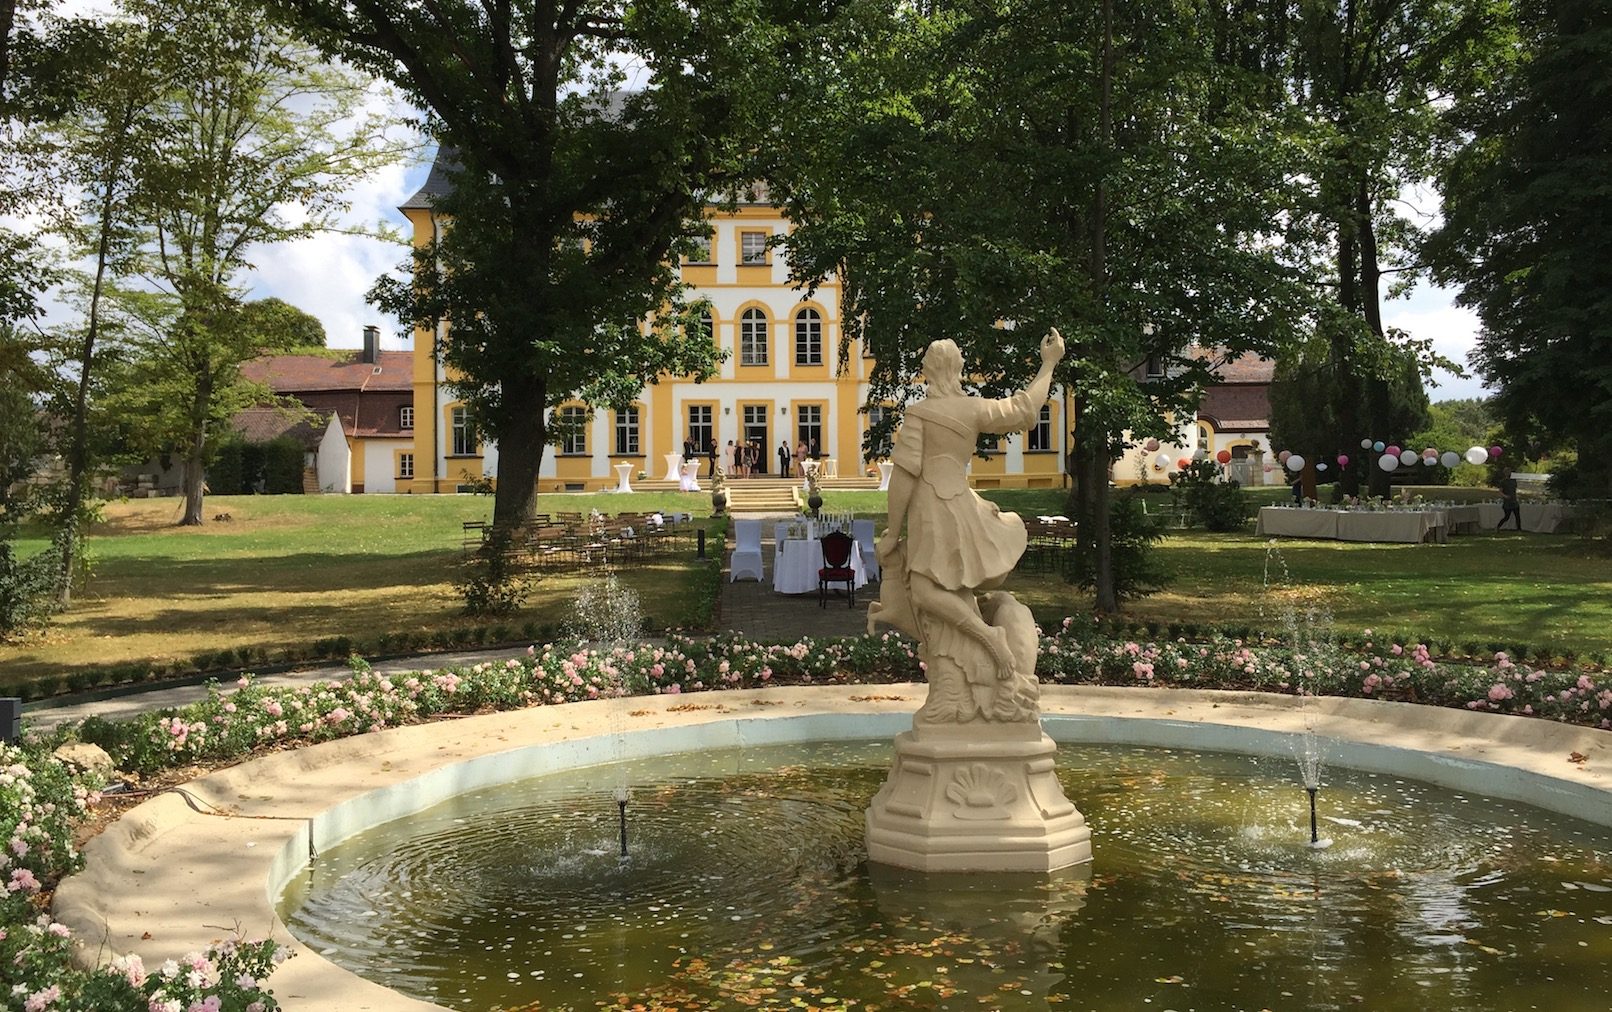 Der Schlossparkbrunnen befindet sich im Vordergrund. Eine Statue ragt aus dem Brunnen heraus und hat den Blick auf das Schloss gerichtet. Das Schloss Jaegersburg steht im Hintergrund, die Terasse ist festlich geschmückt.